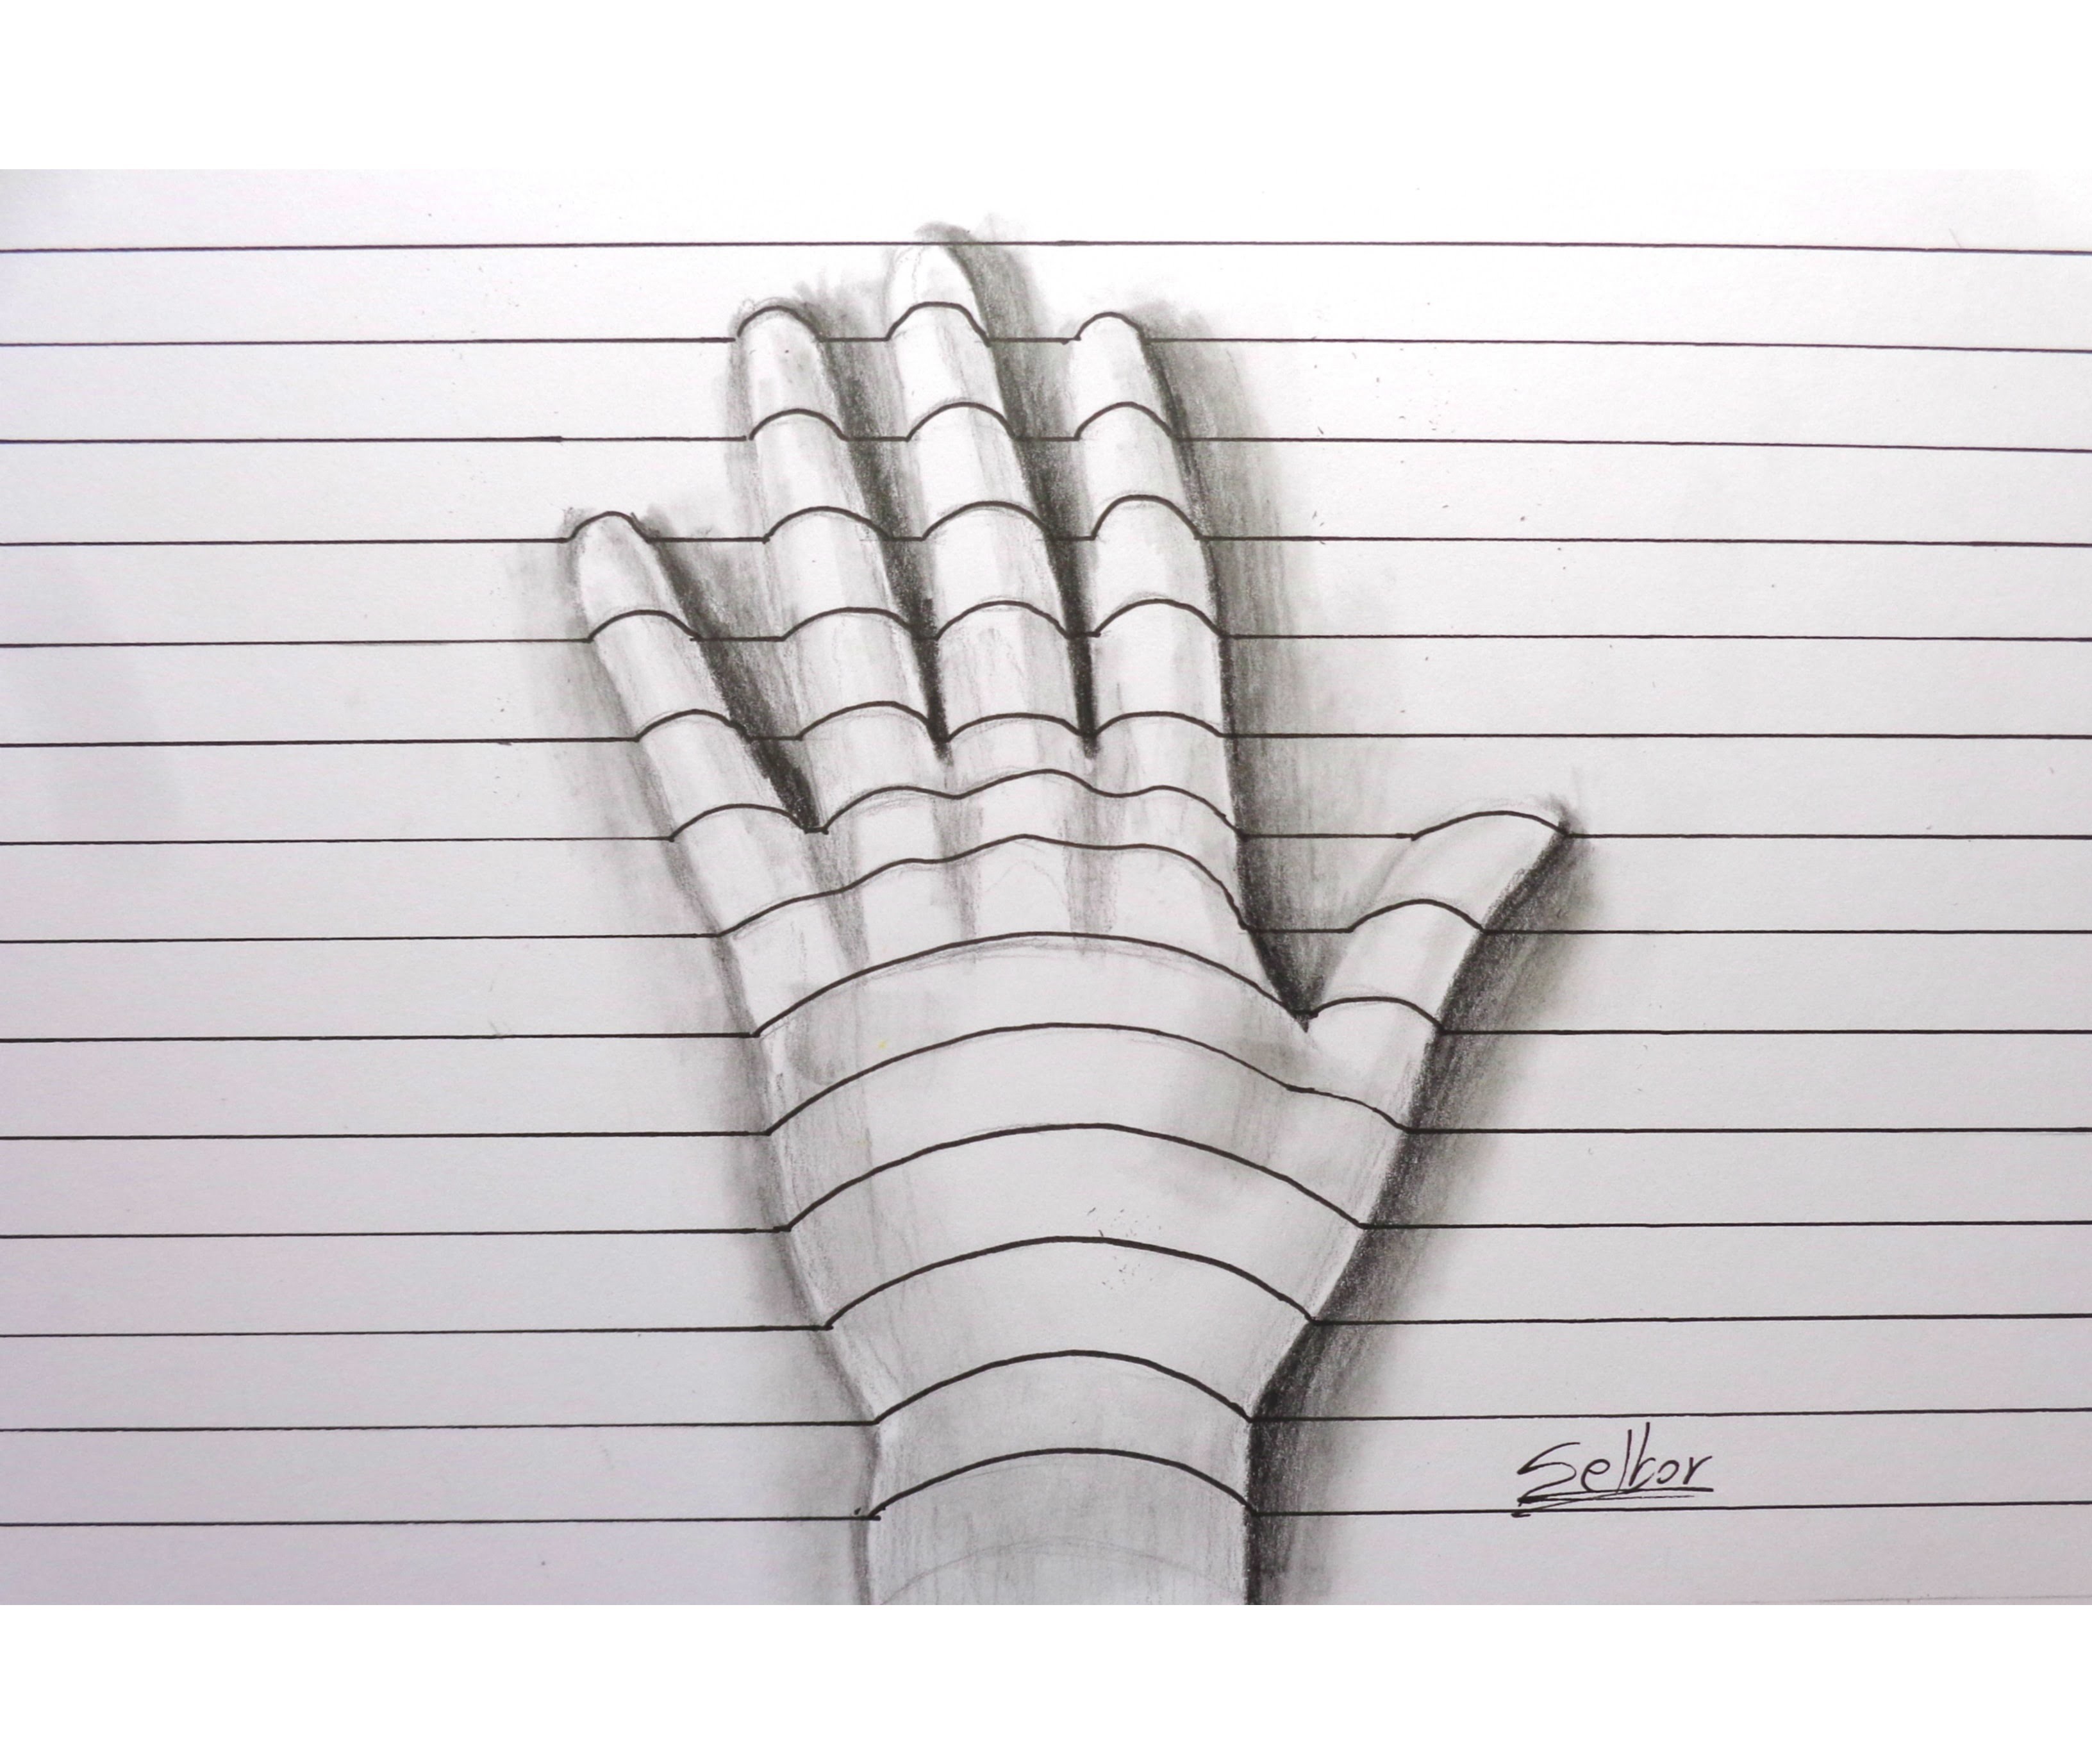 Cómo dibujar una mano con relieve - 3D (Paso a paso) | Selbor